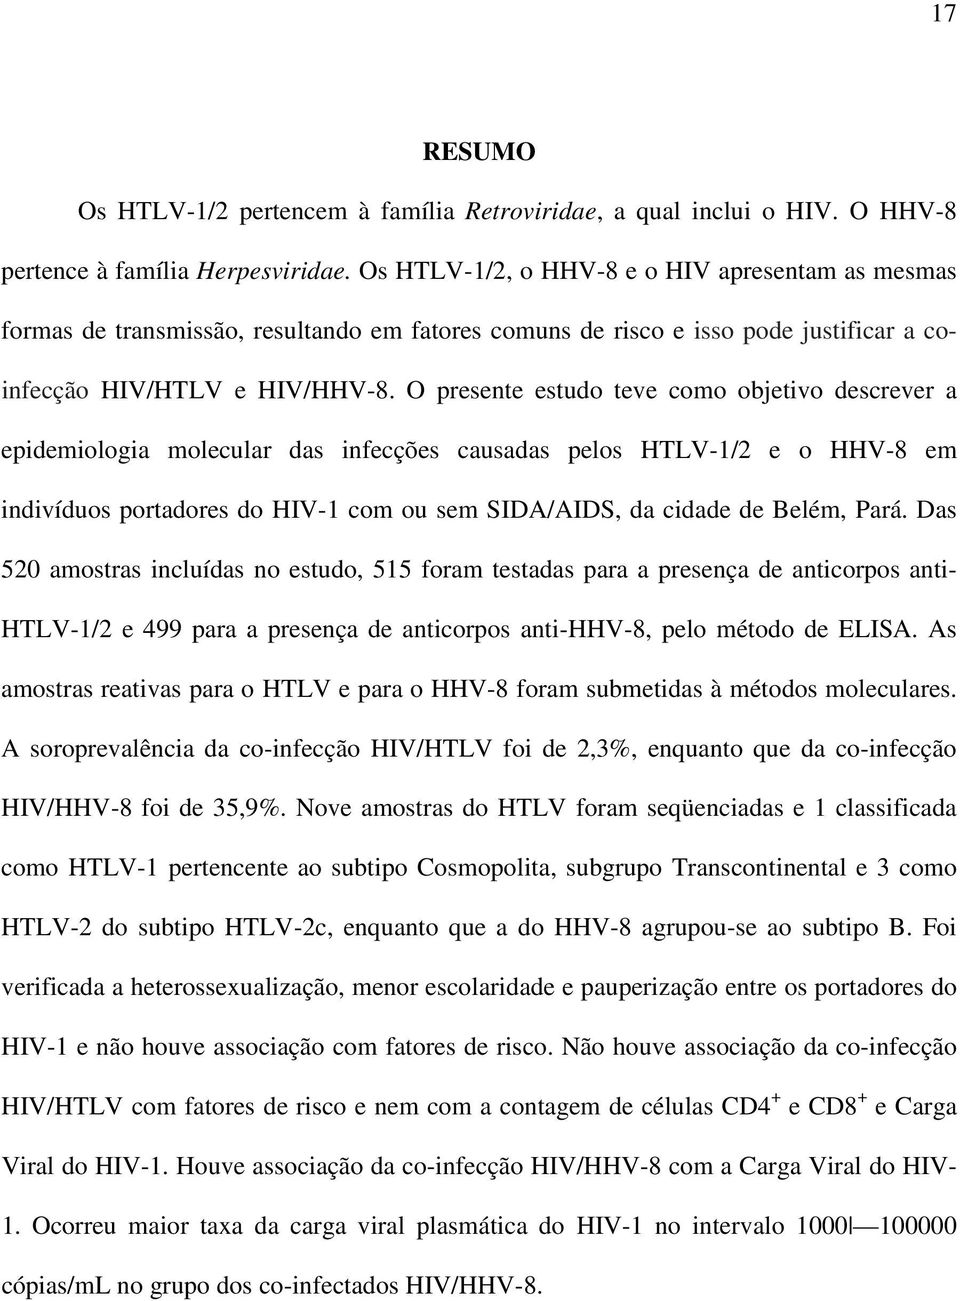 O presente estudo teve como objetivo descrever a epidemiologia molecular das infecções causadas pelos HTLV-1/2 e o HHV-8 em indivíduos portadores do HIV-1 com ou sem SIDA/AIDS, da cidade de Belém,